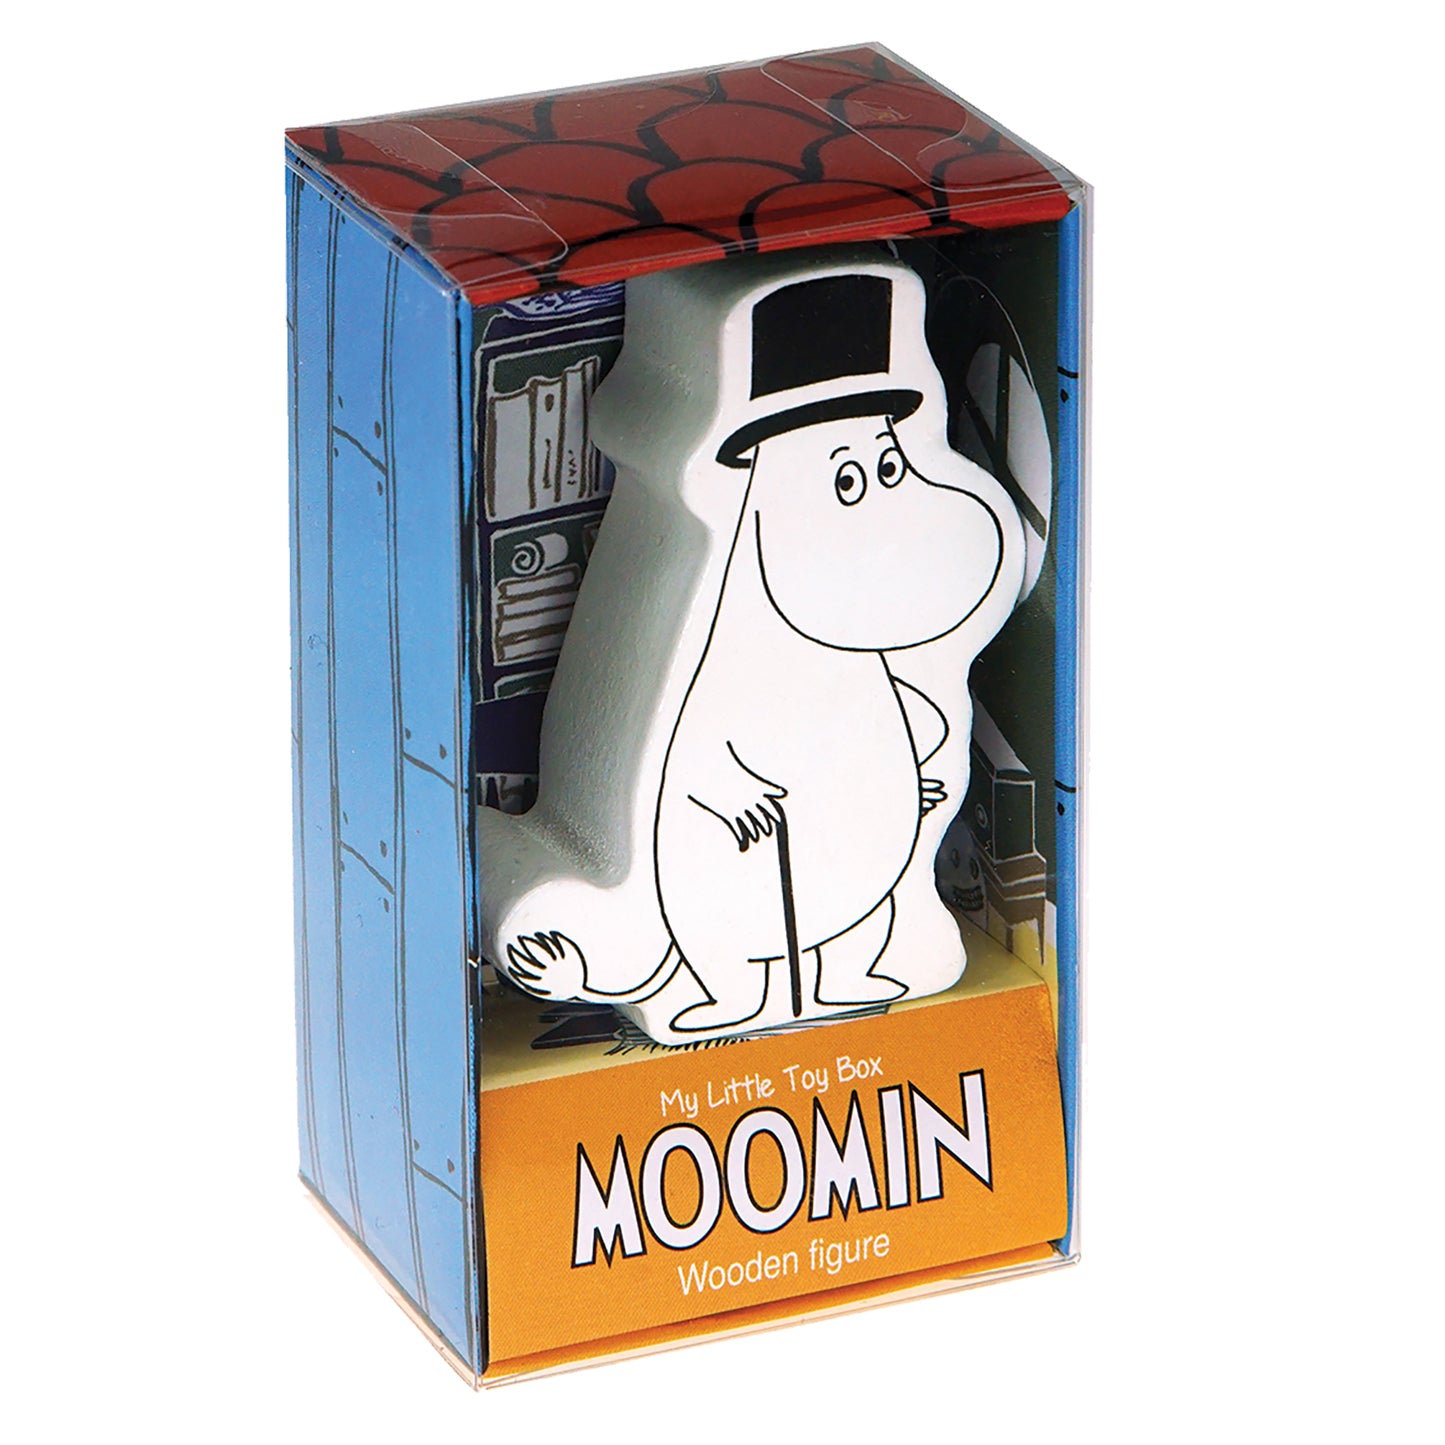 Moominpappa - My Little Wooden Figure